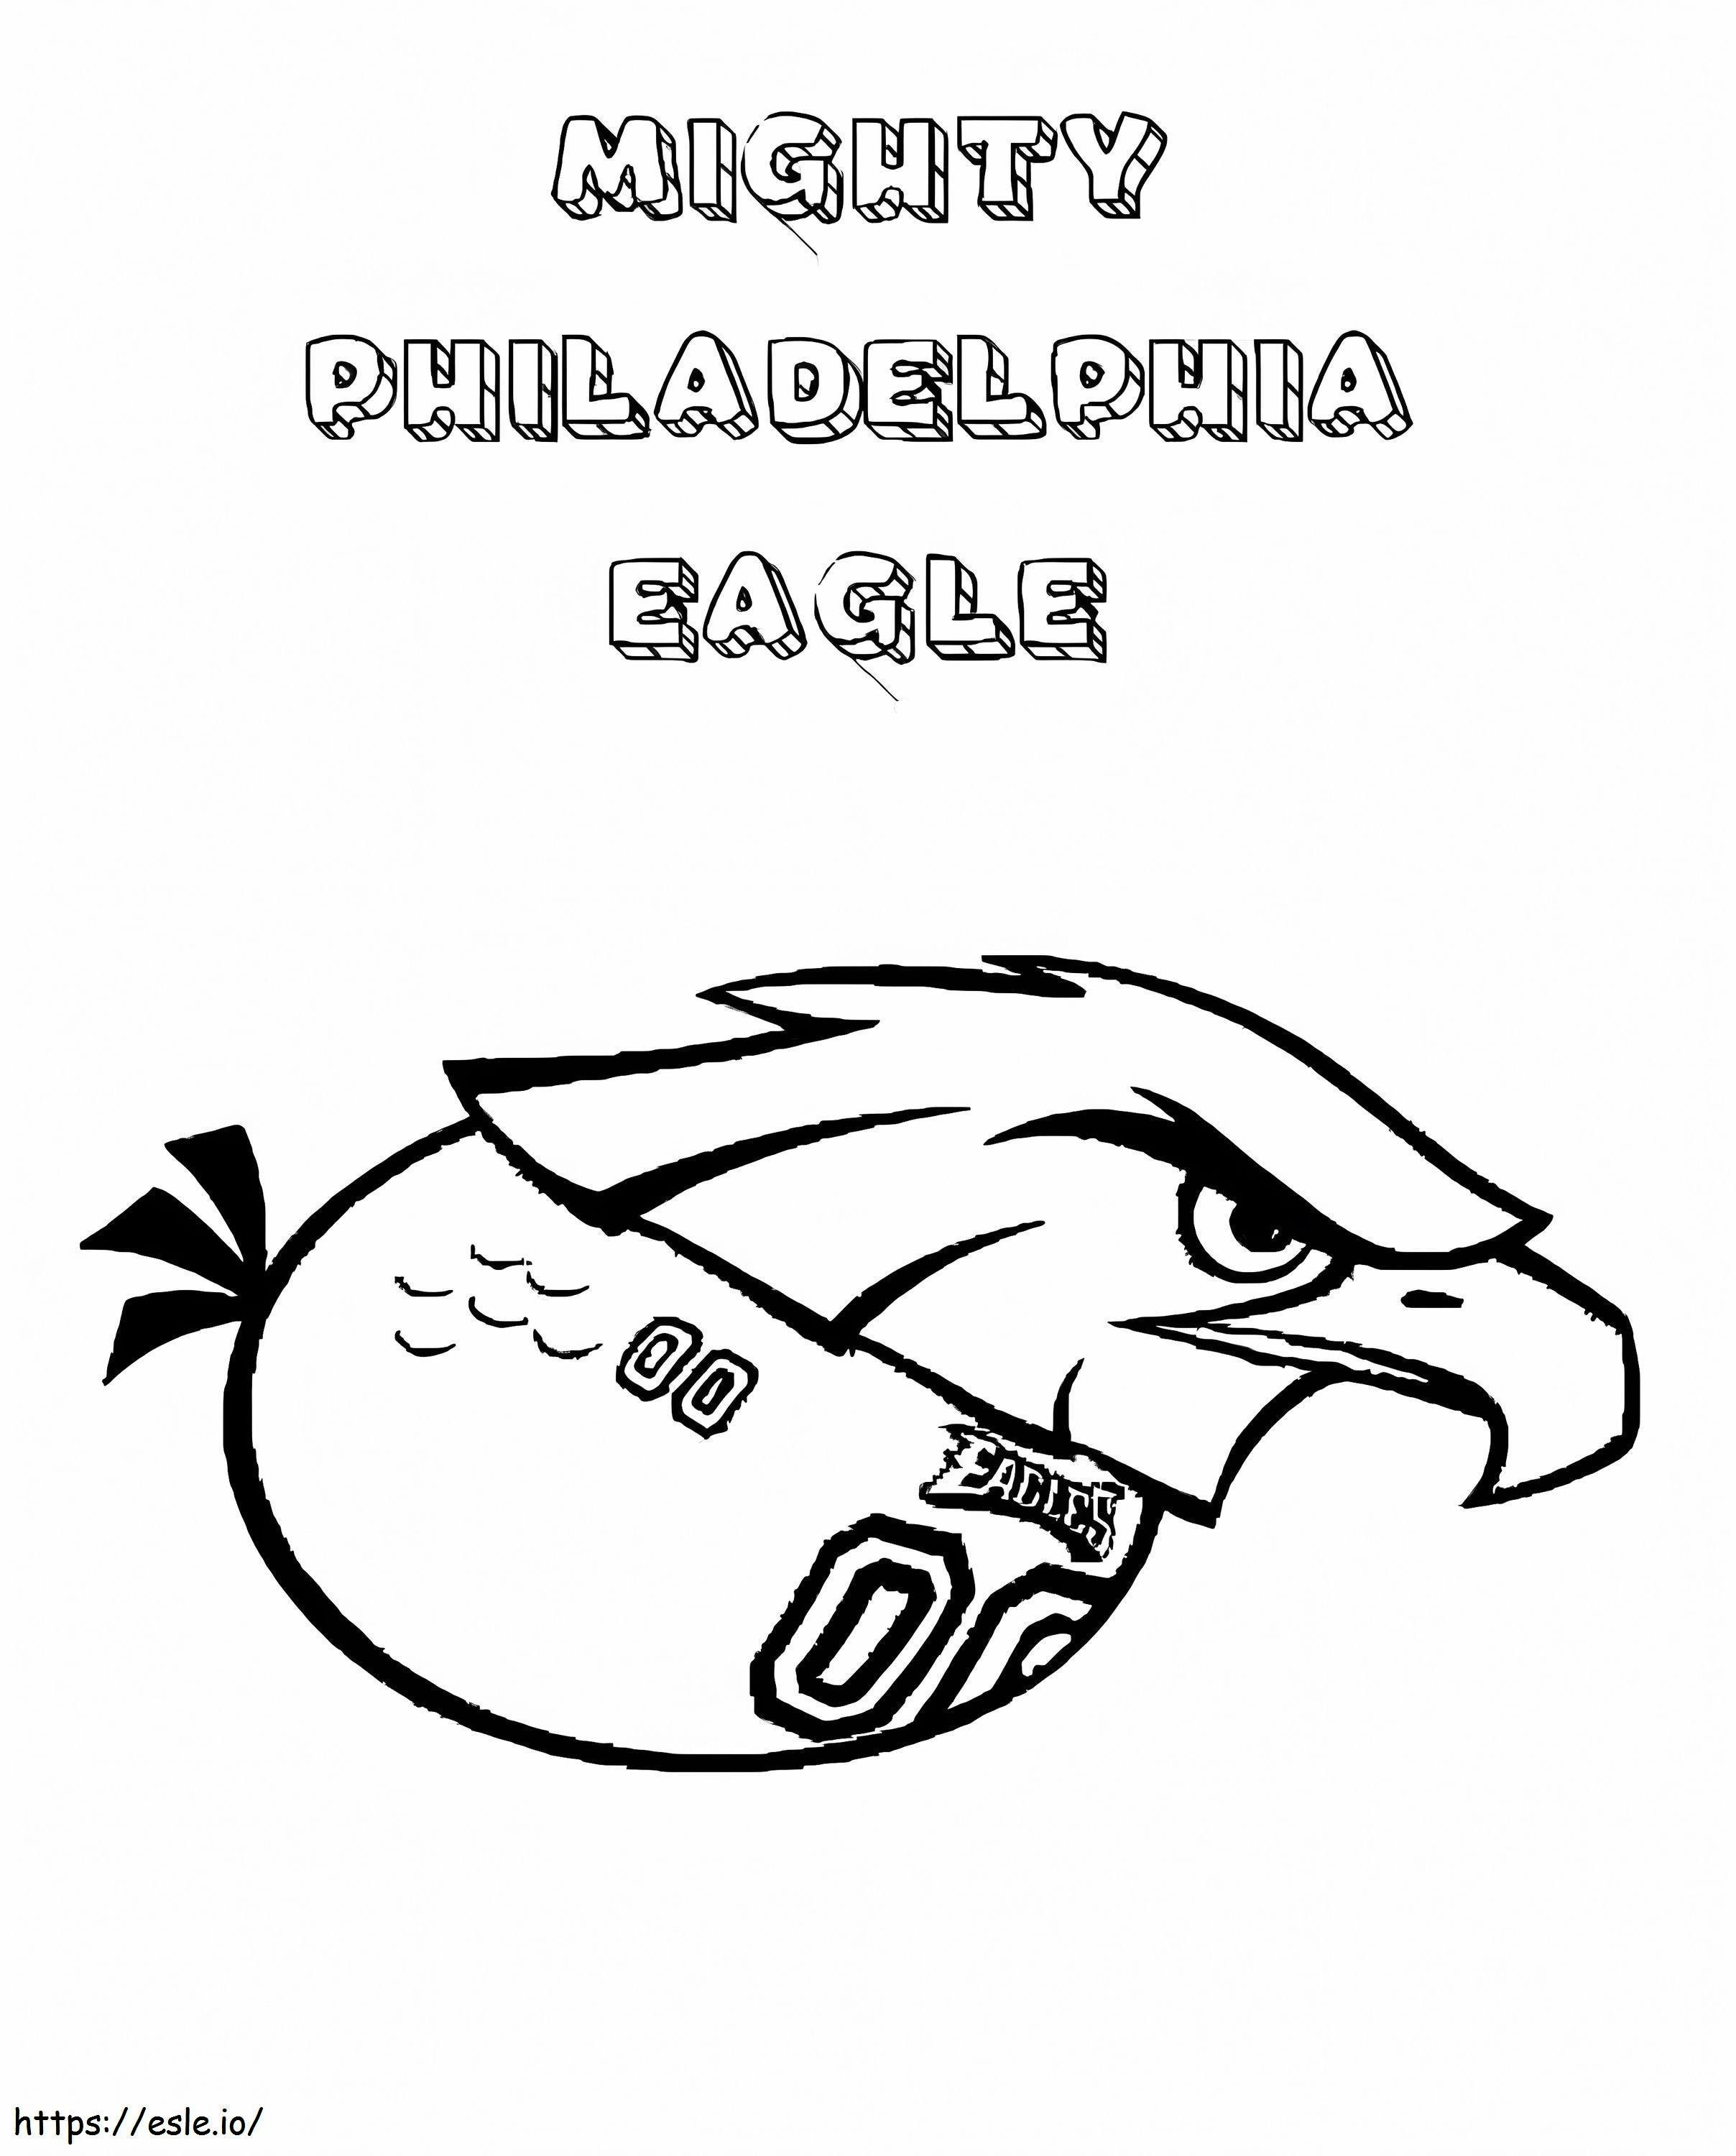 Poderosa águila de Filadelfia para colorear